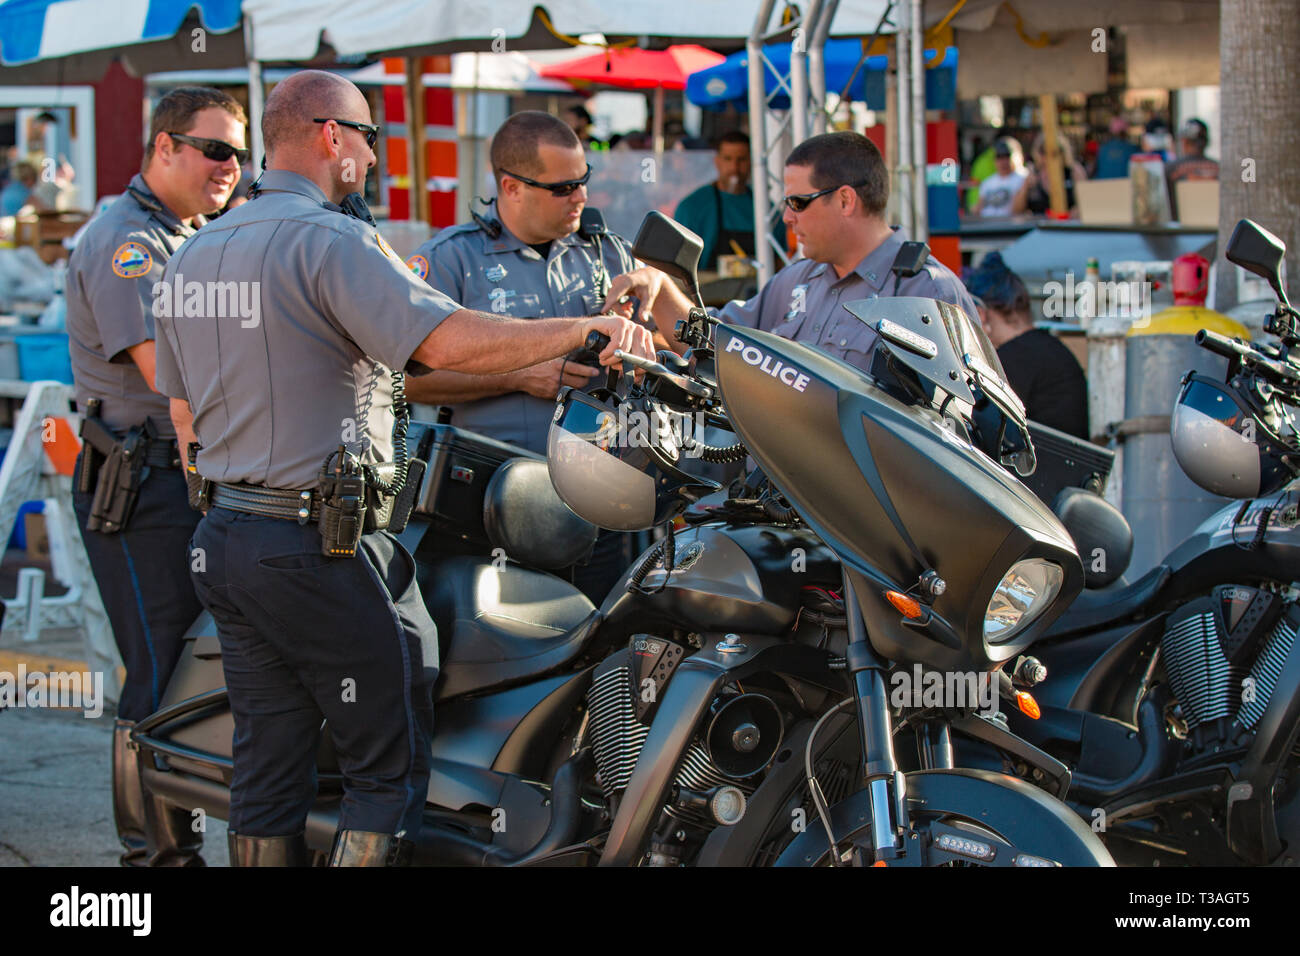 Daytona Beach, FL - 12 mars 2016 : les agents de police moto Daytona Beach à la 75e Semaine annuelle de vélo à la plage la plus célèbre du monde. Banque D'Images